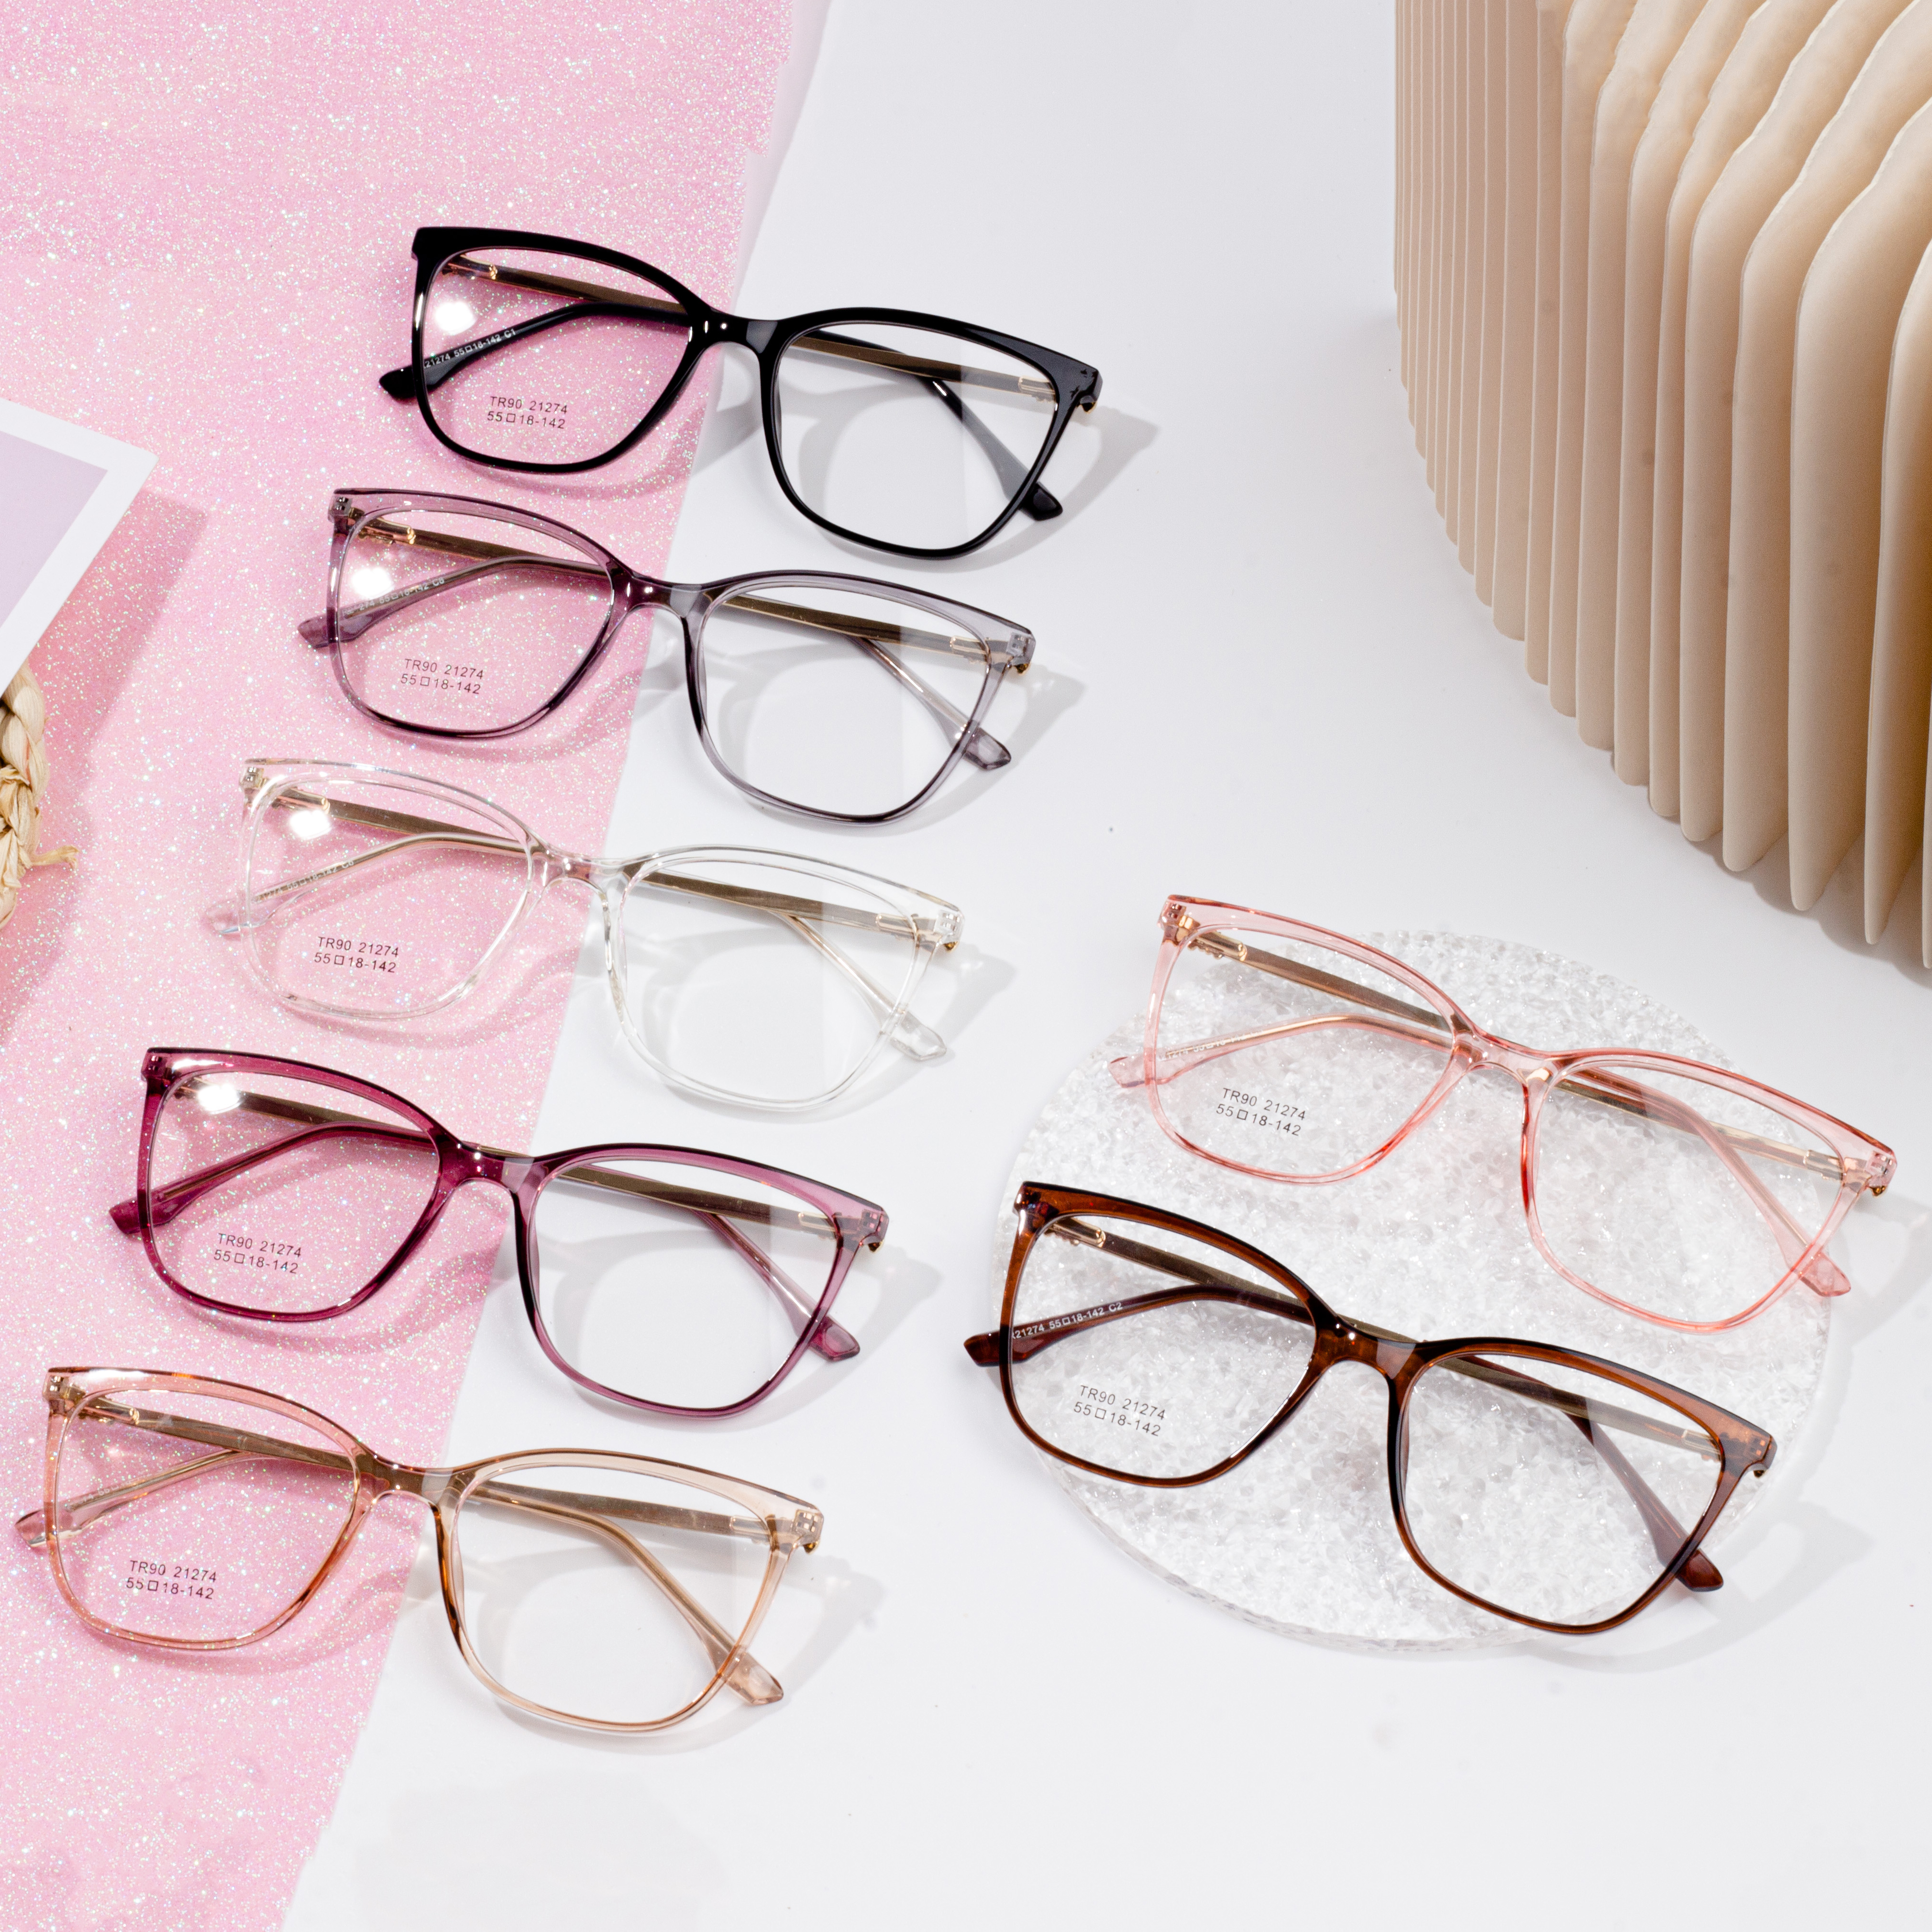 Best-Selling Acetate Frame Glasses - New Arrival eyeglasses frames for women – HJ EYEWEAR